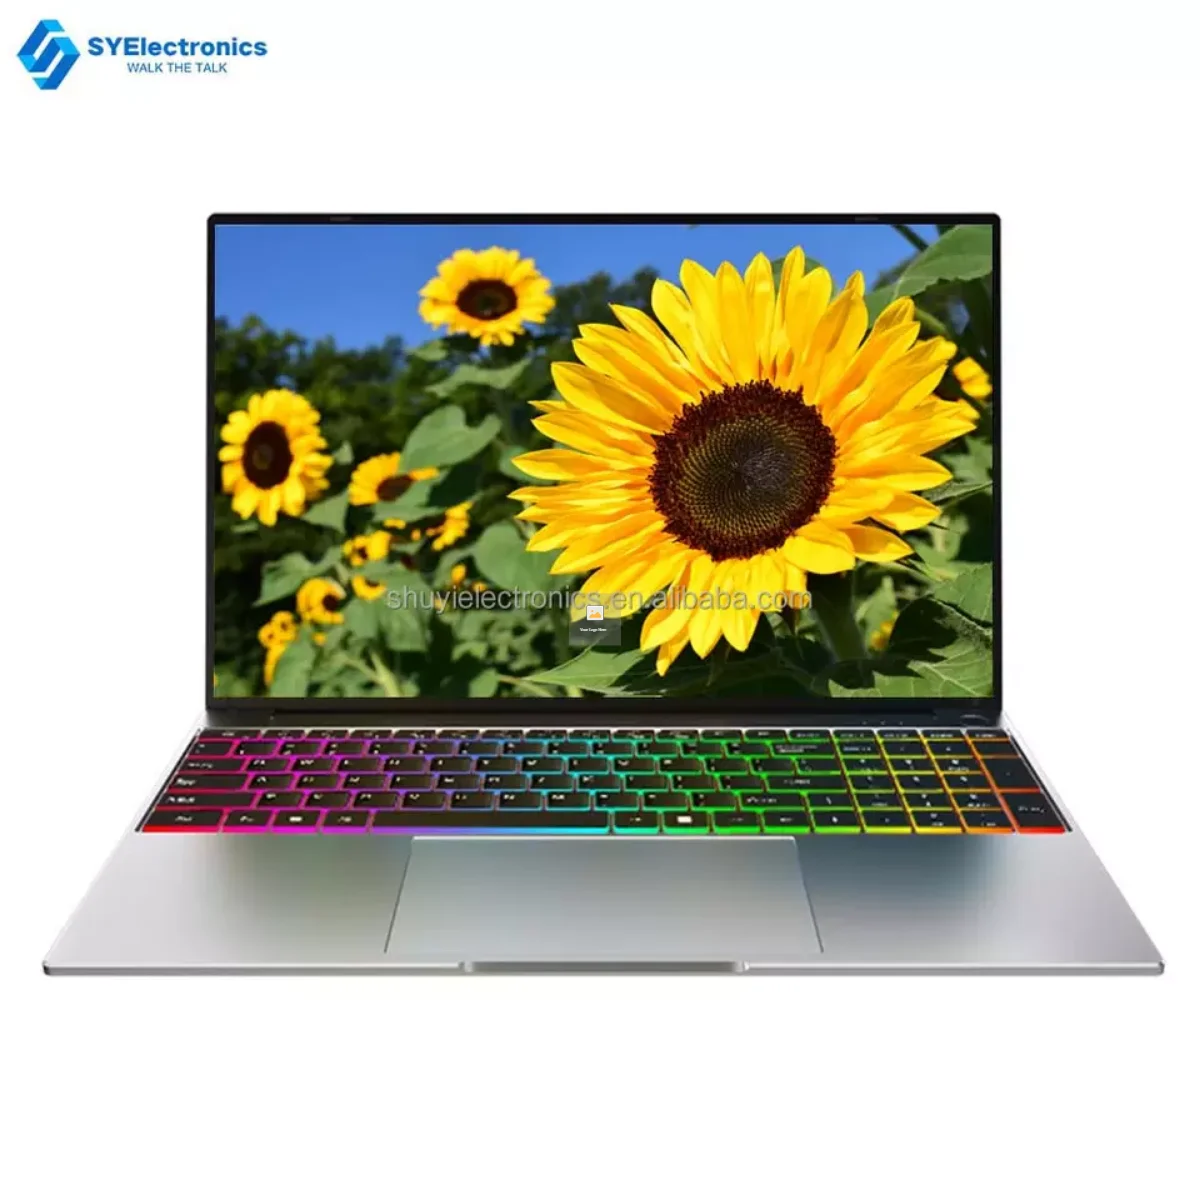 Best laptop under rm3000